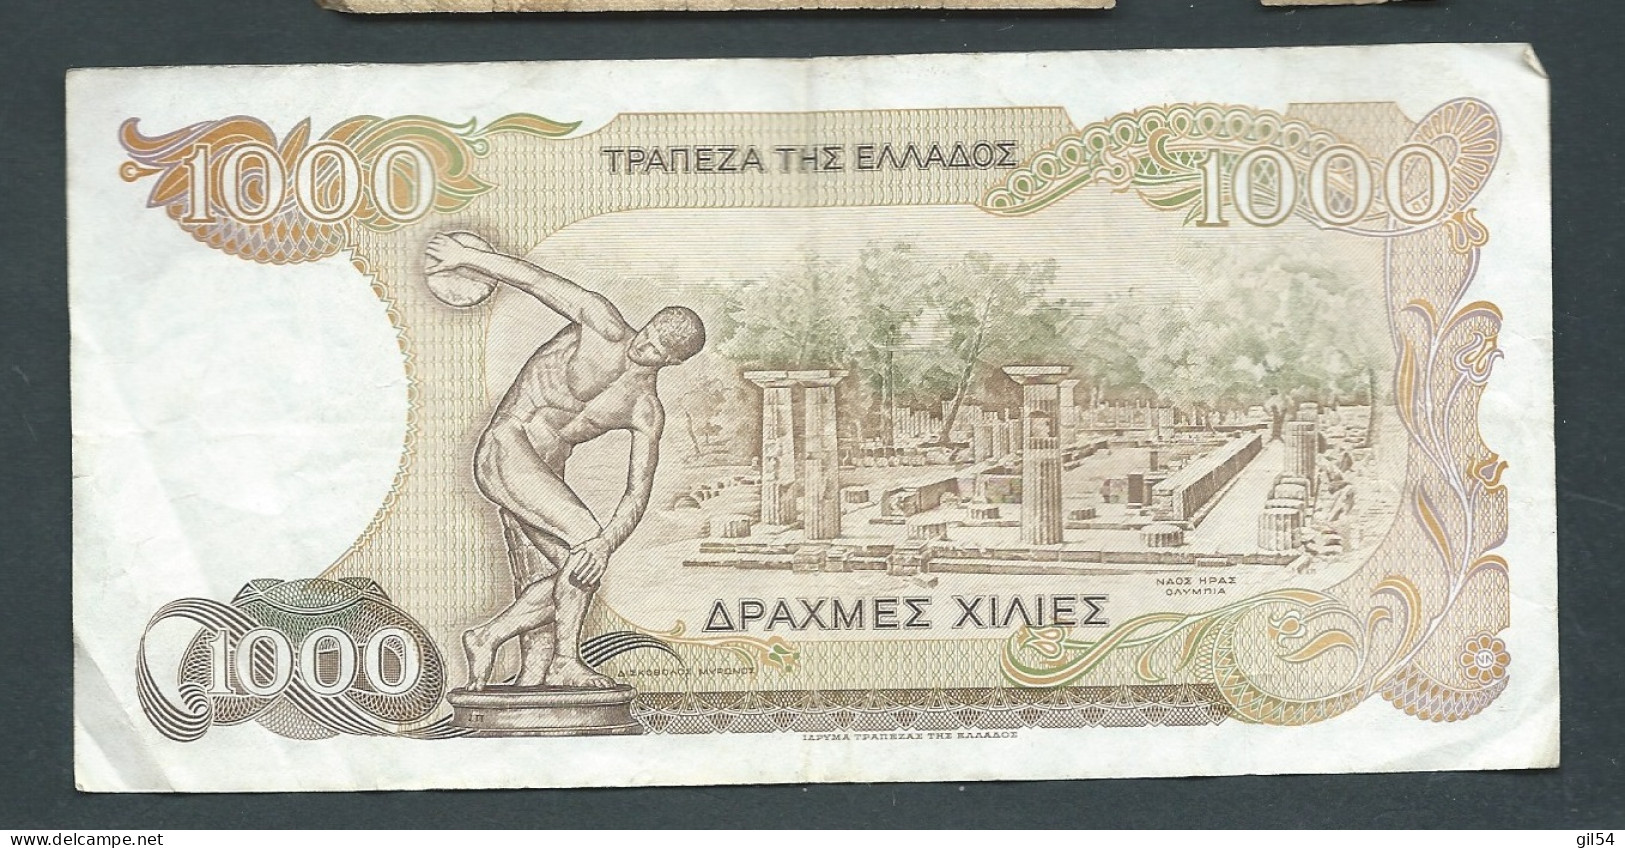 Billet, Grece   GREECE - 1000 Drachmes - .1987  - 847071  Laura 13312 - Greece